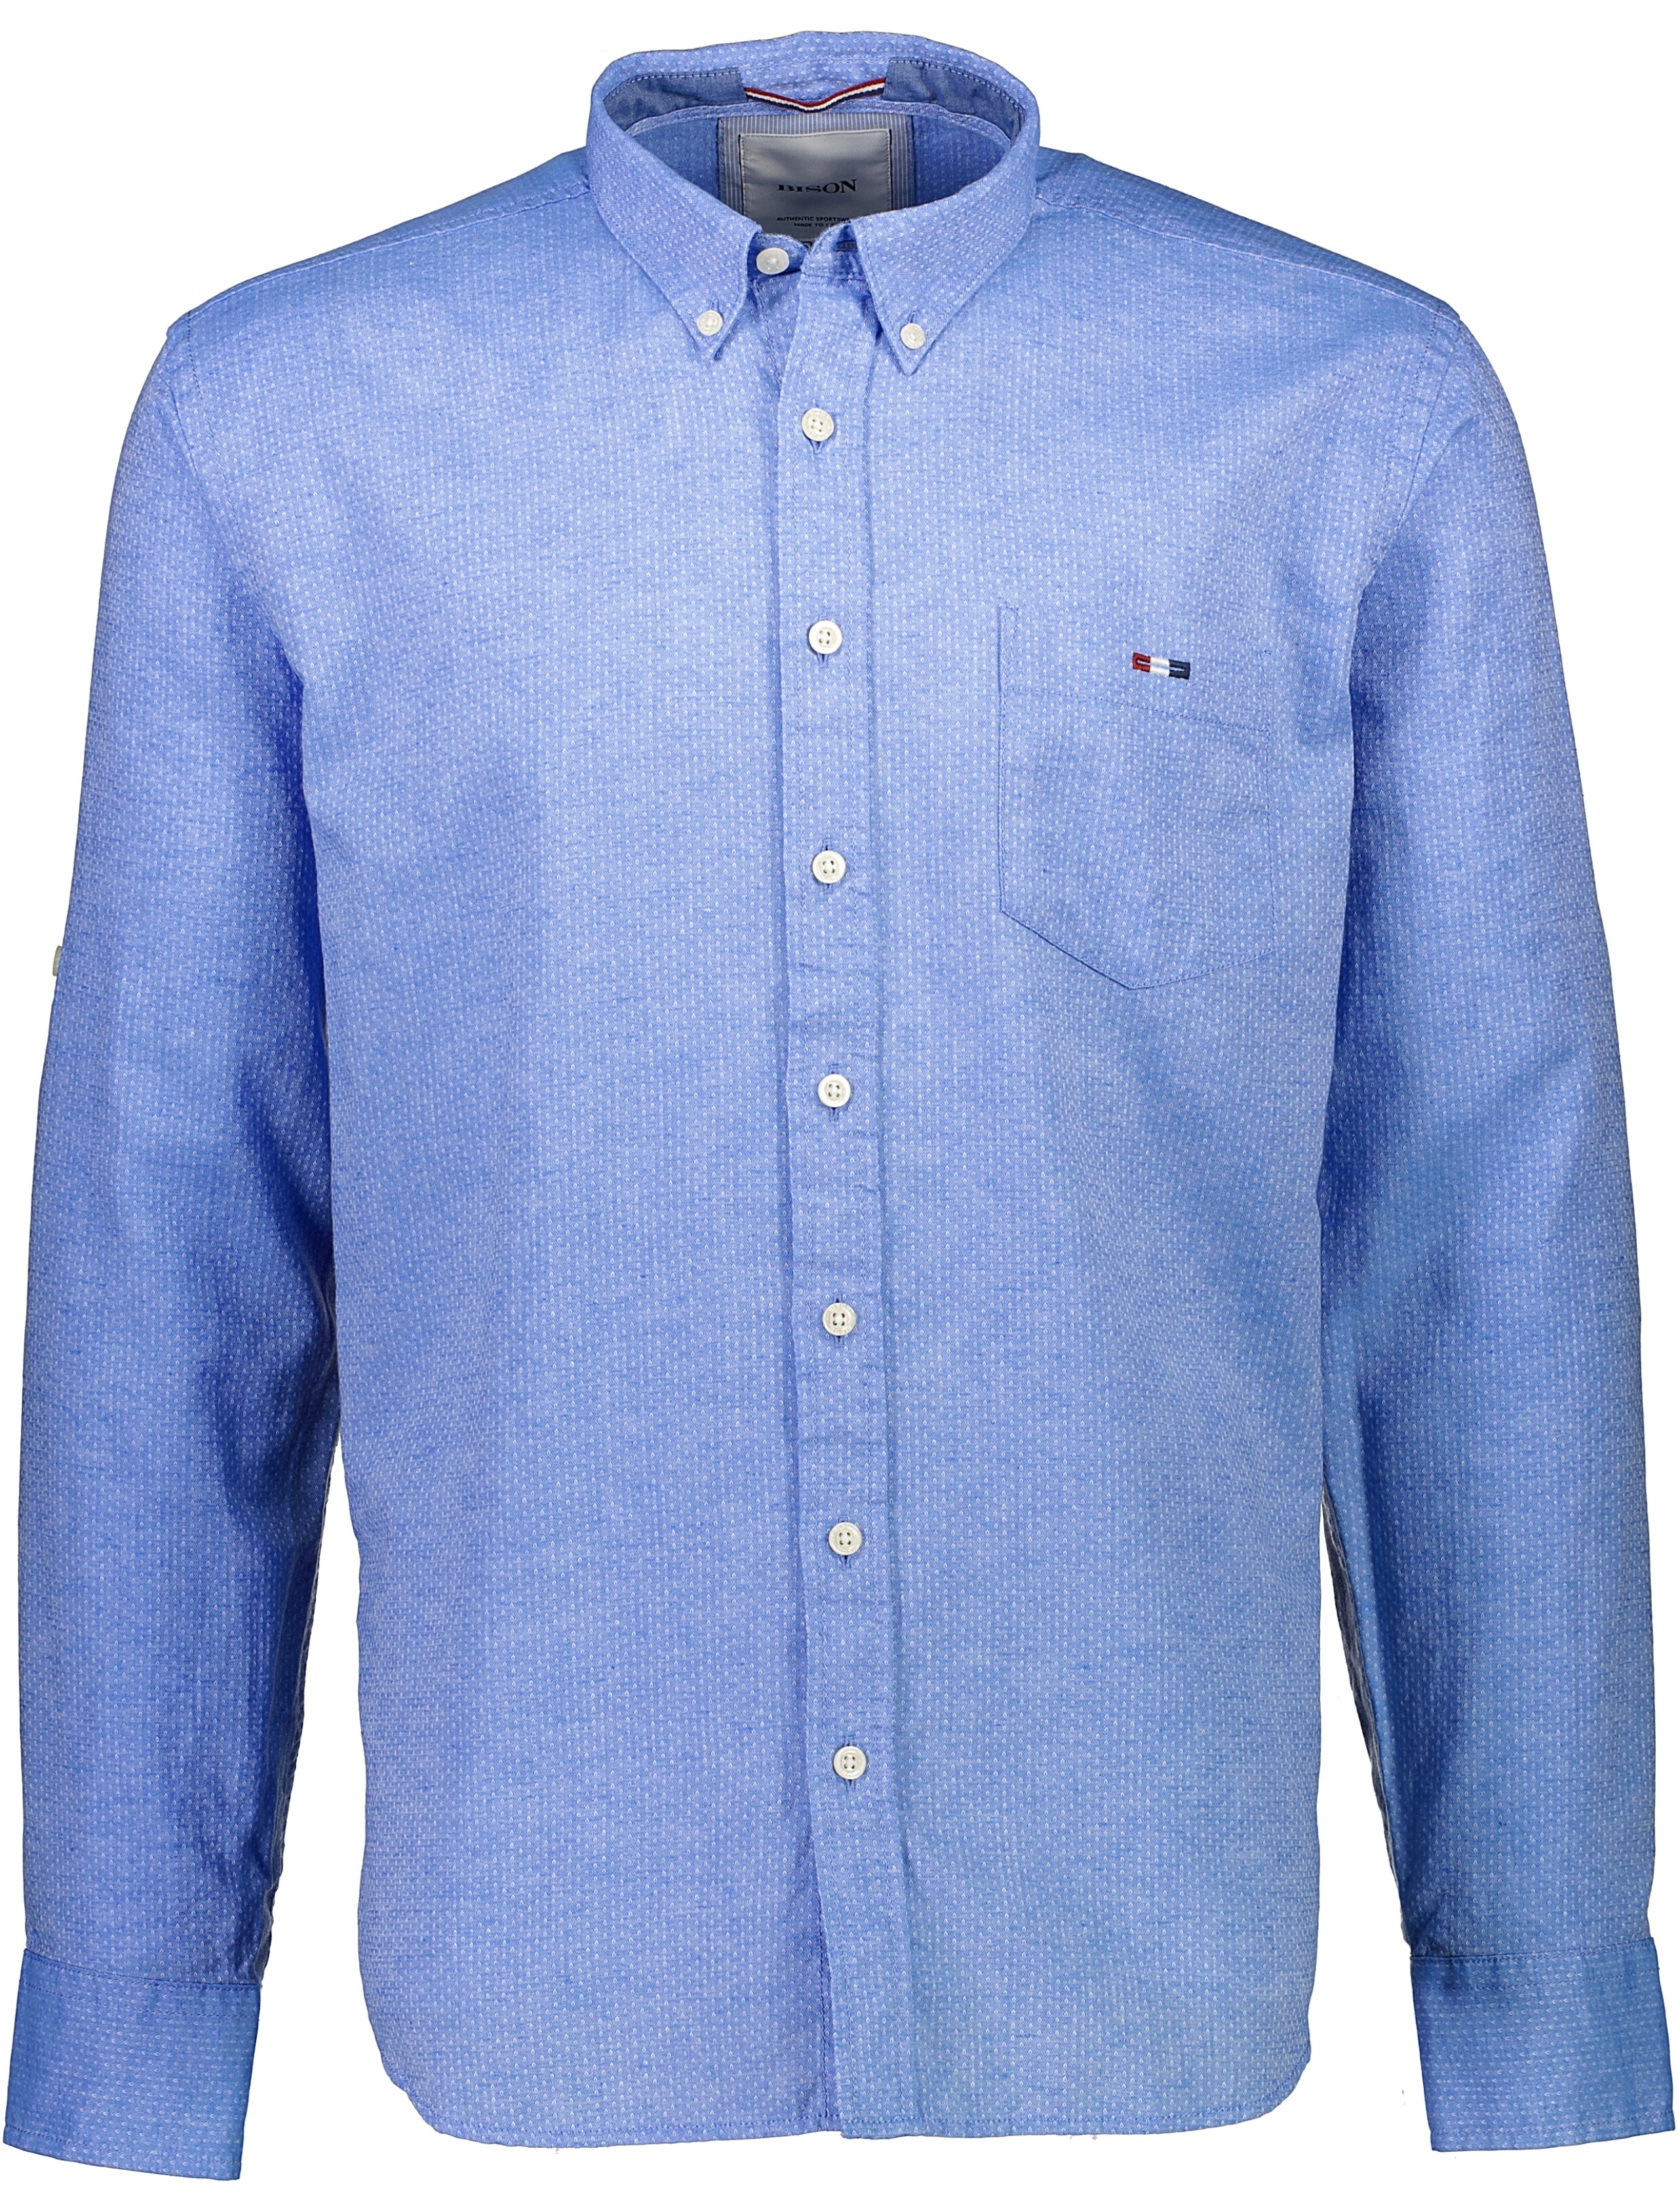 Bison Casual skjorta blå / light blue